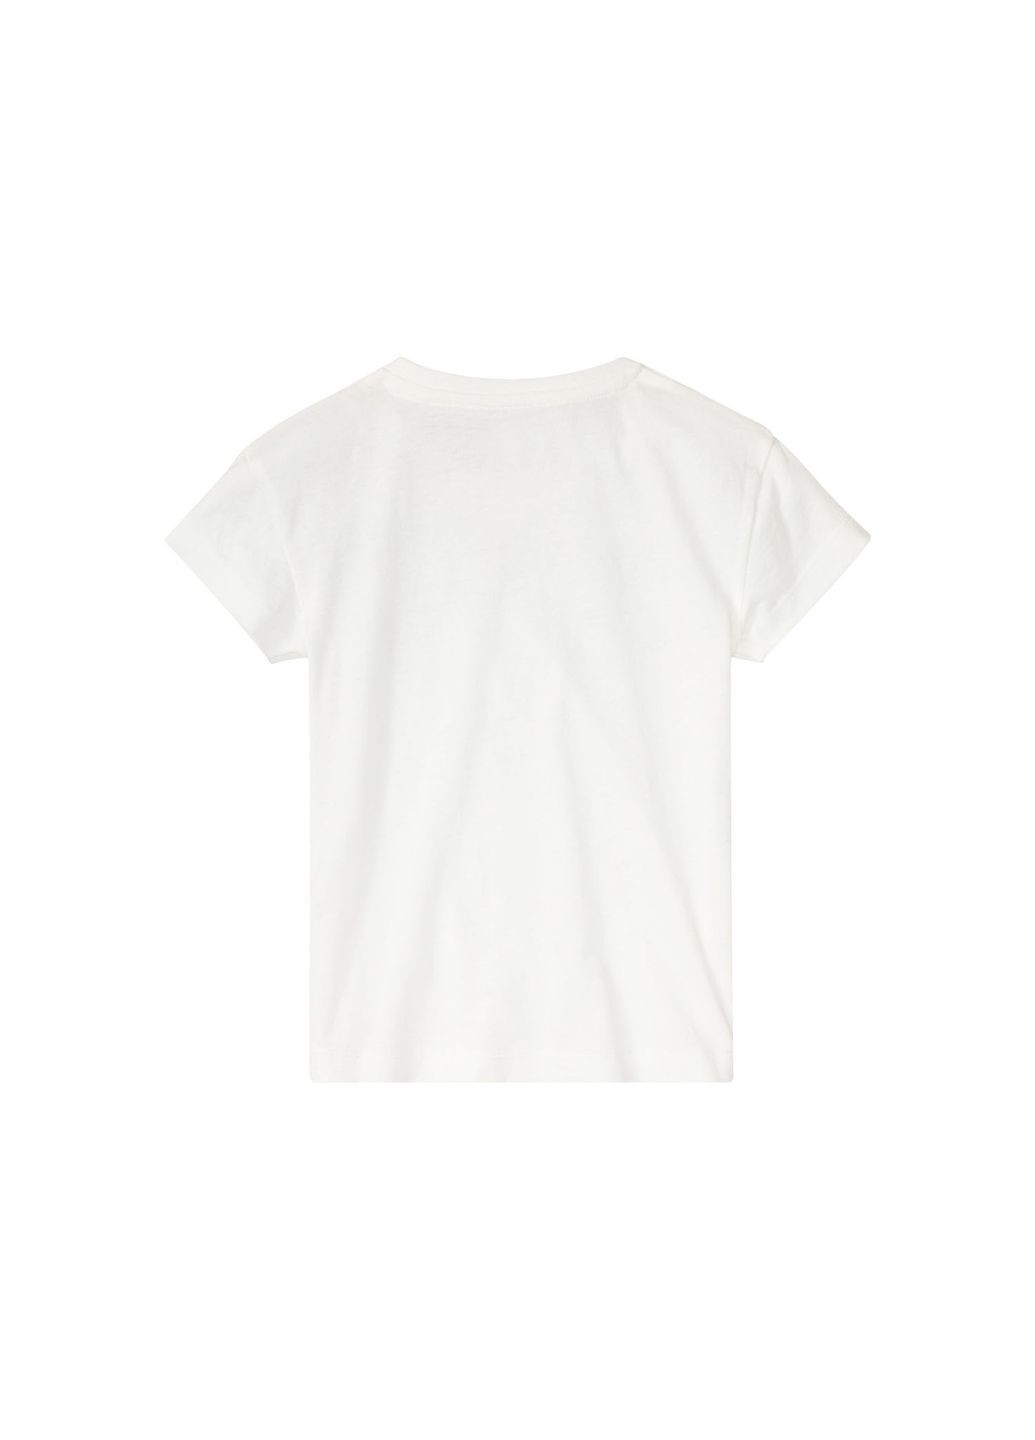 Белая демисезонная футболка хлопковая для девочки 400414 Lupilu